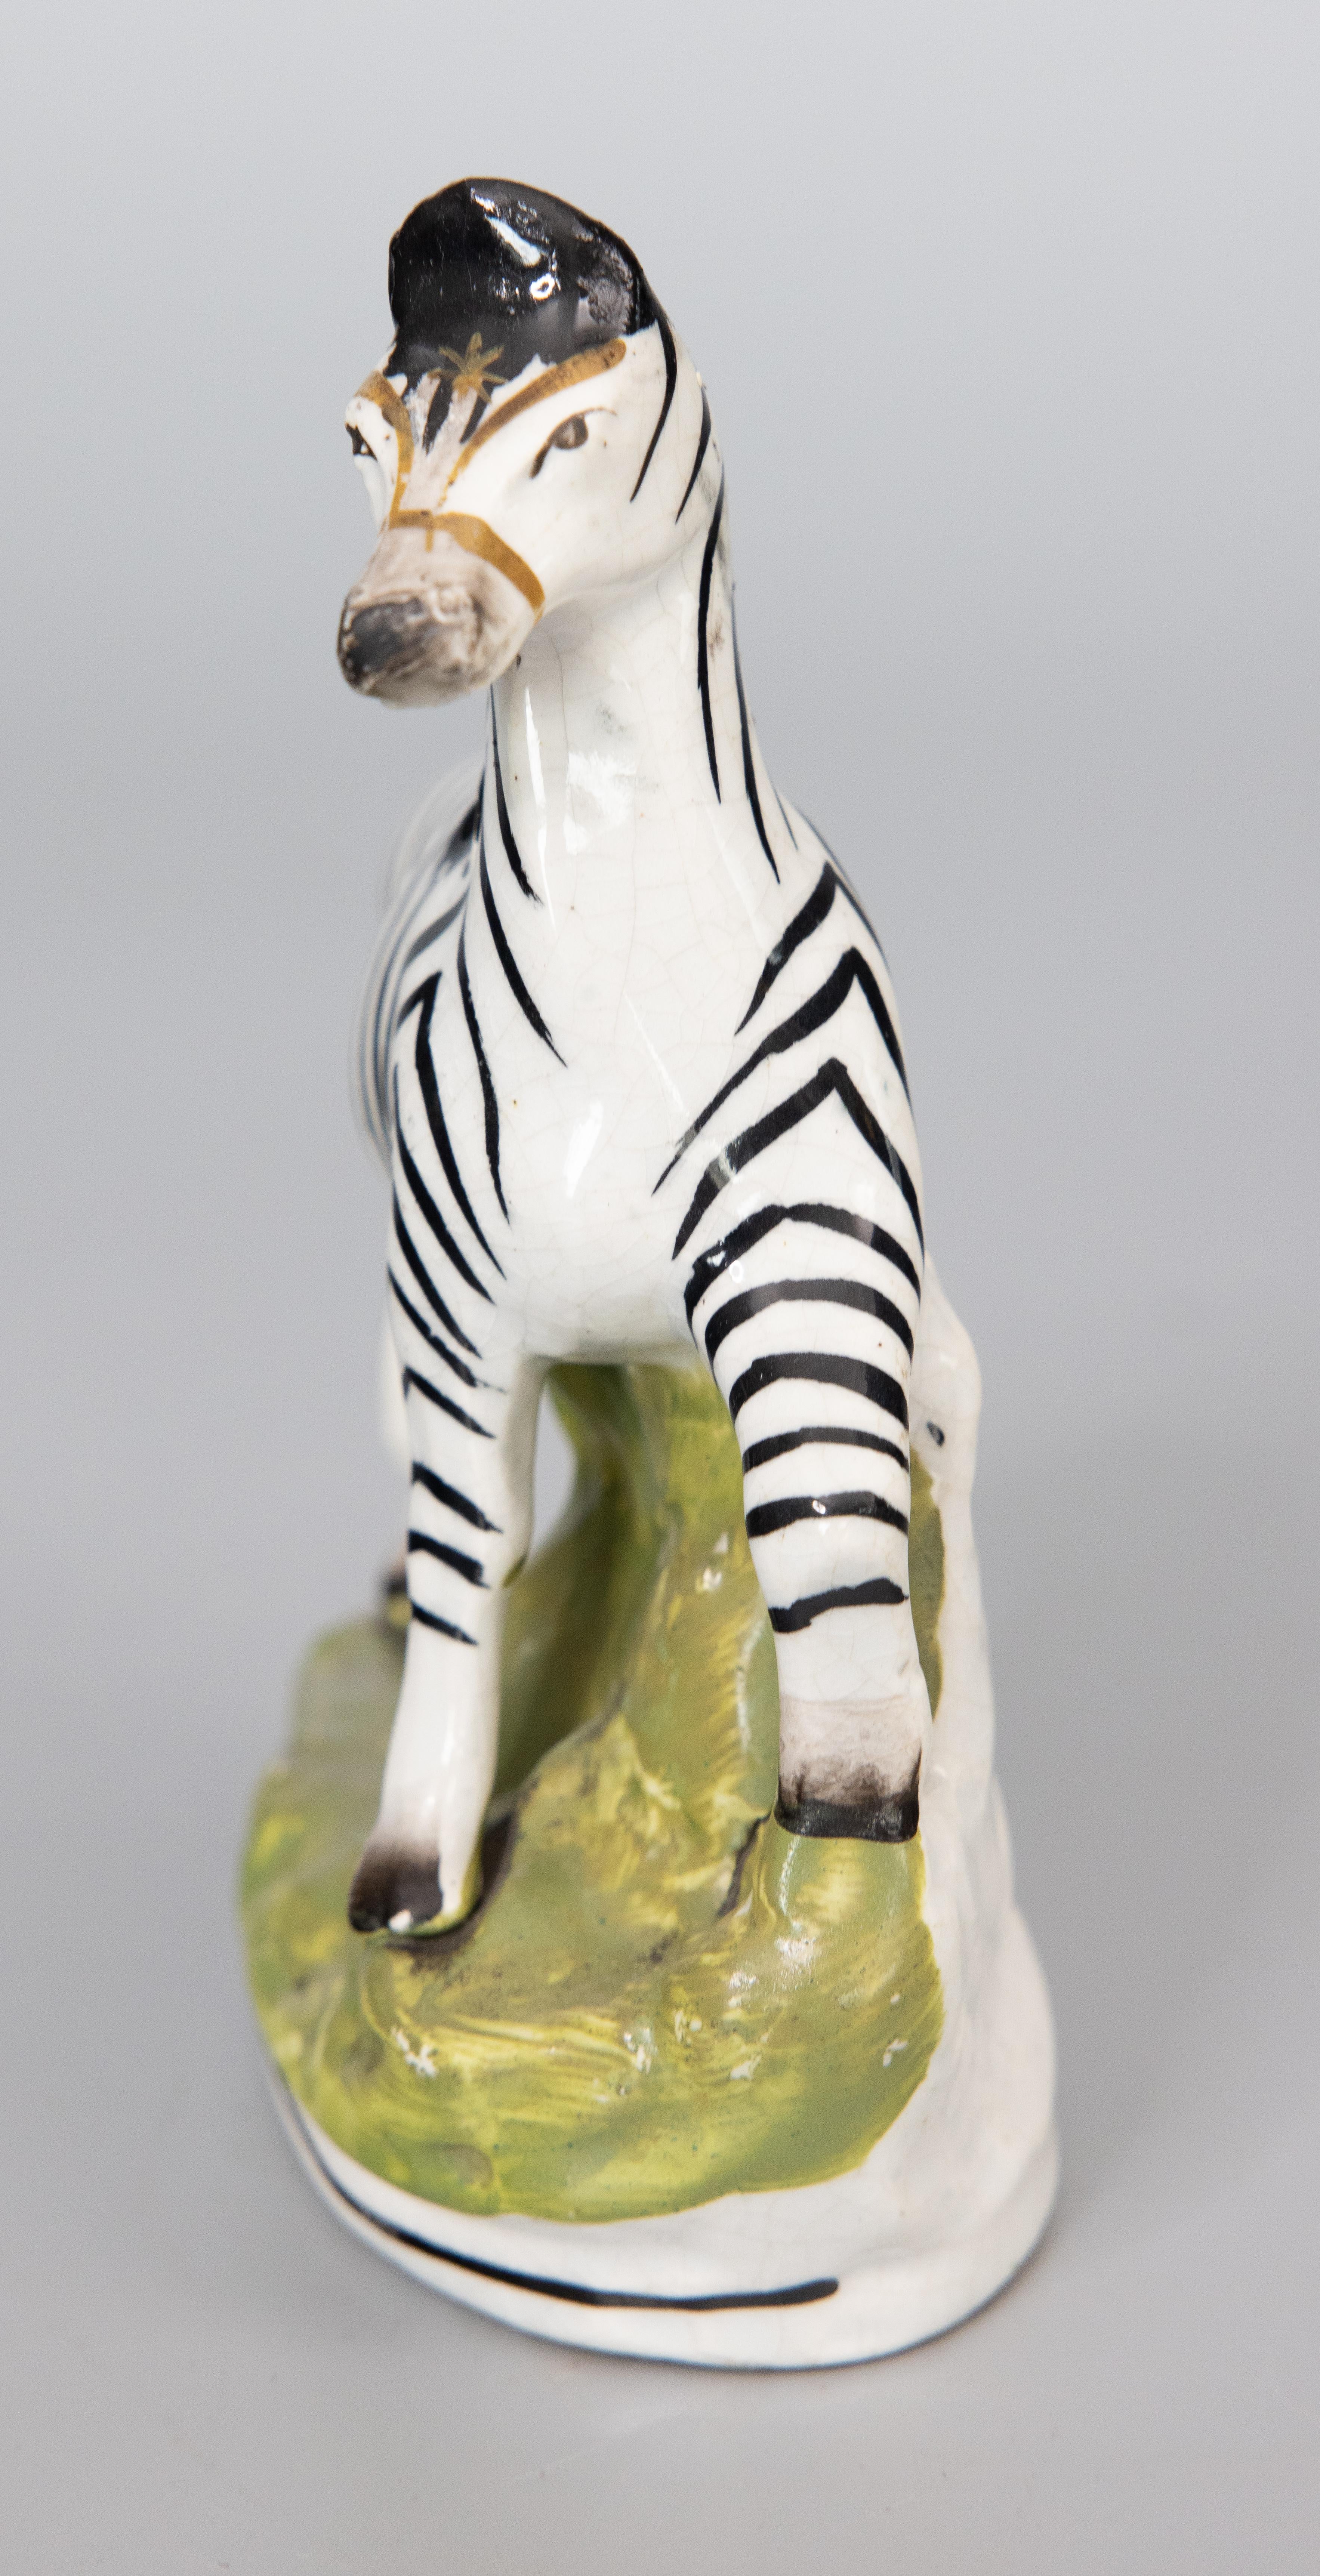 Superbe figurine zébrée en Staffordshire, datant du 19e siècle. Ce charmant zèbre est peint à la main avec de fins détails et serait parfait pour être exposé ou ajouté à une collection.

DIMENSIONS
5 